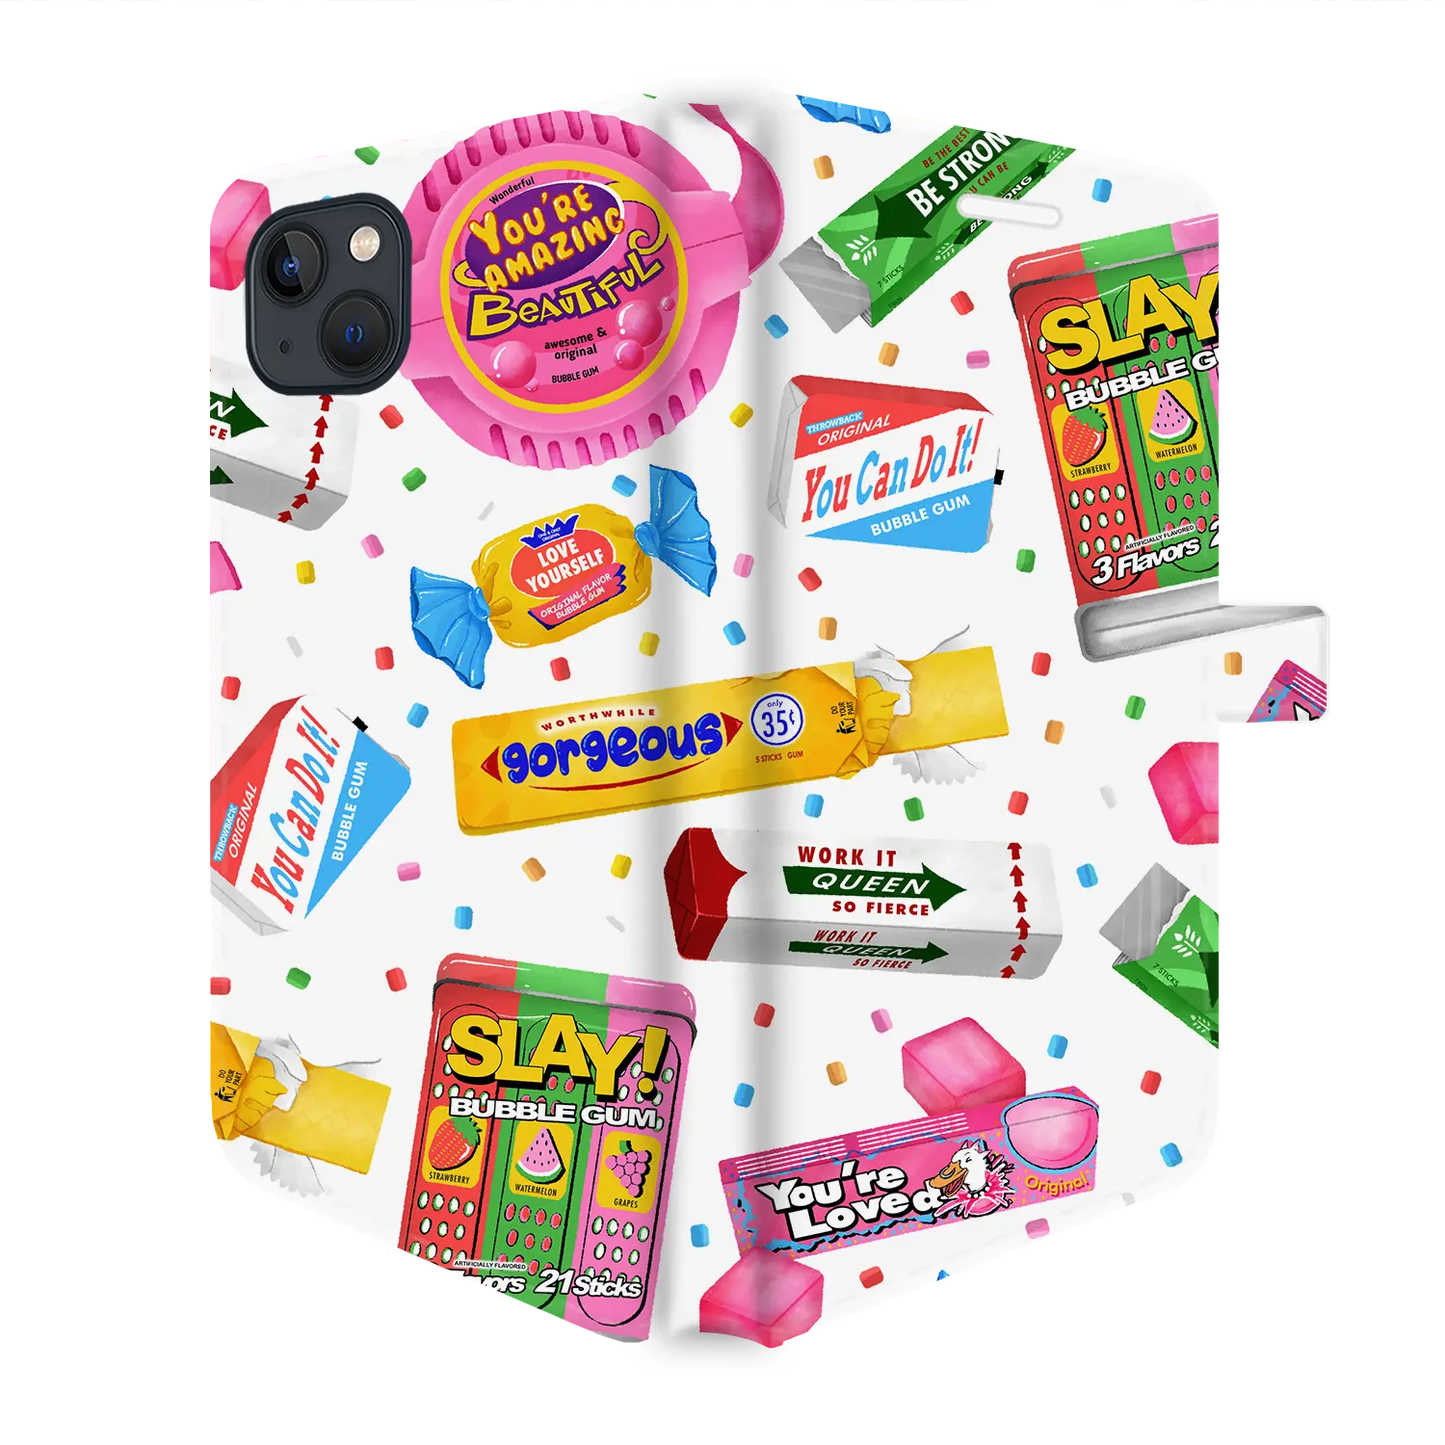 Slay Bubble Gum - Carcasa personalizada iPhone